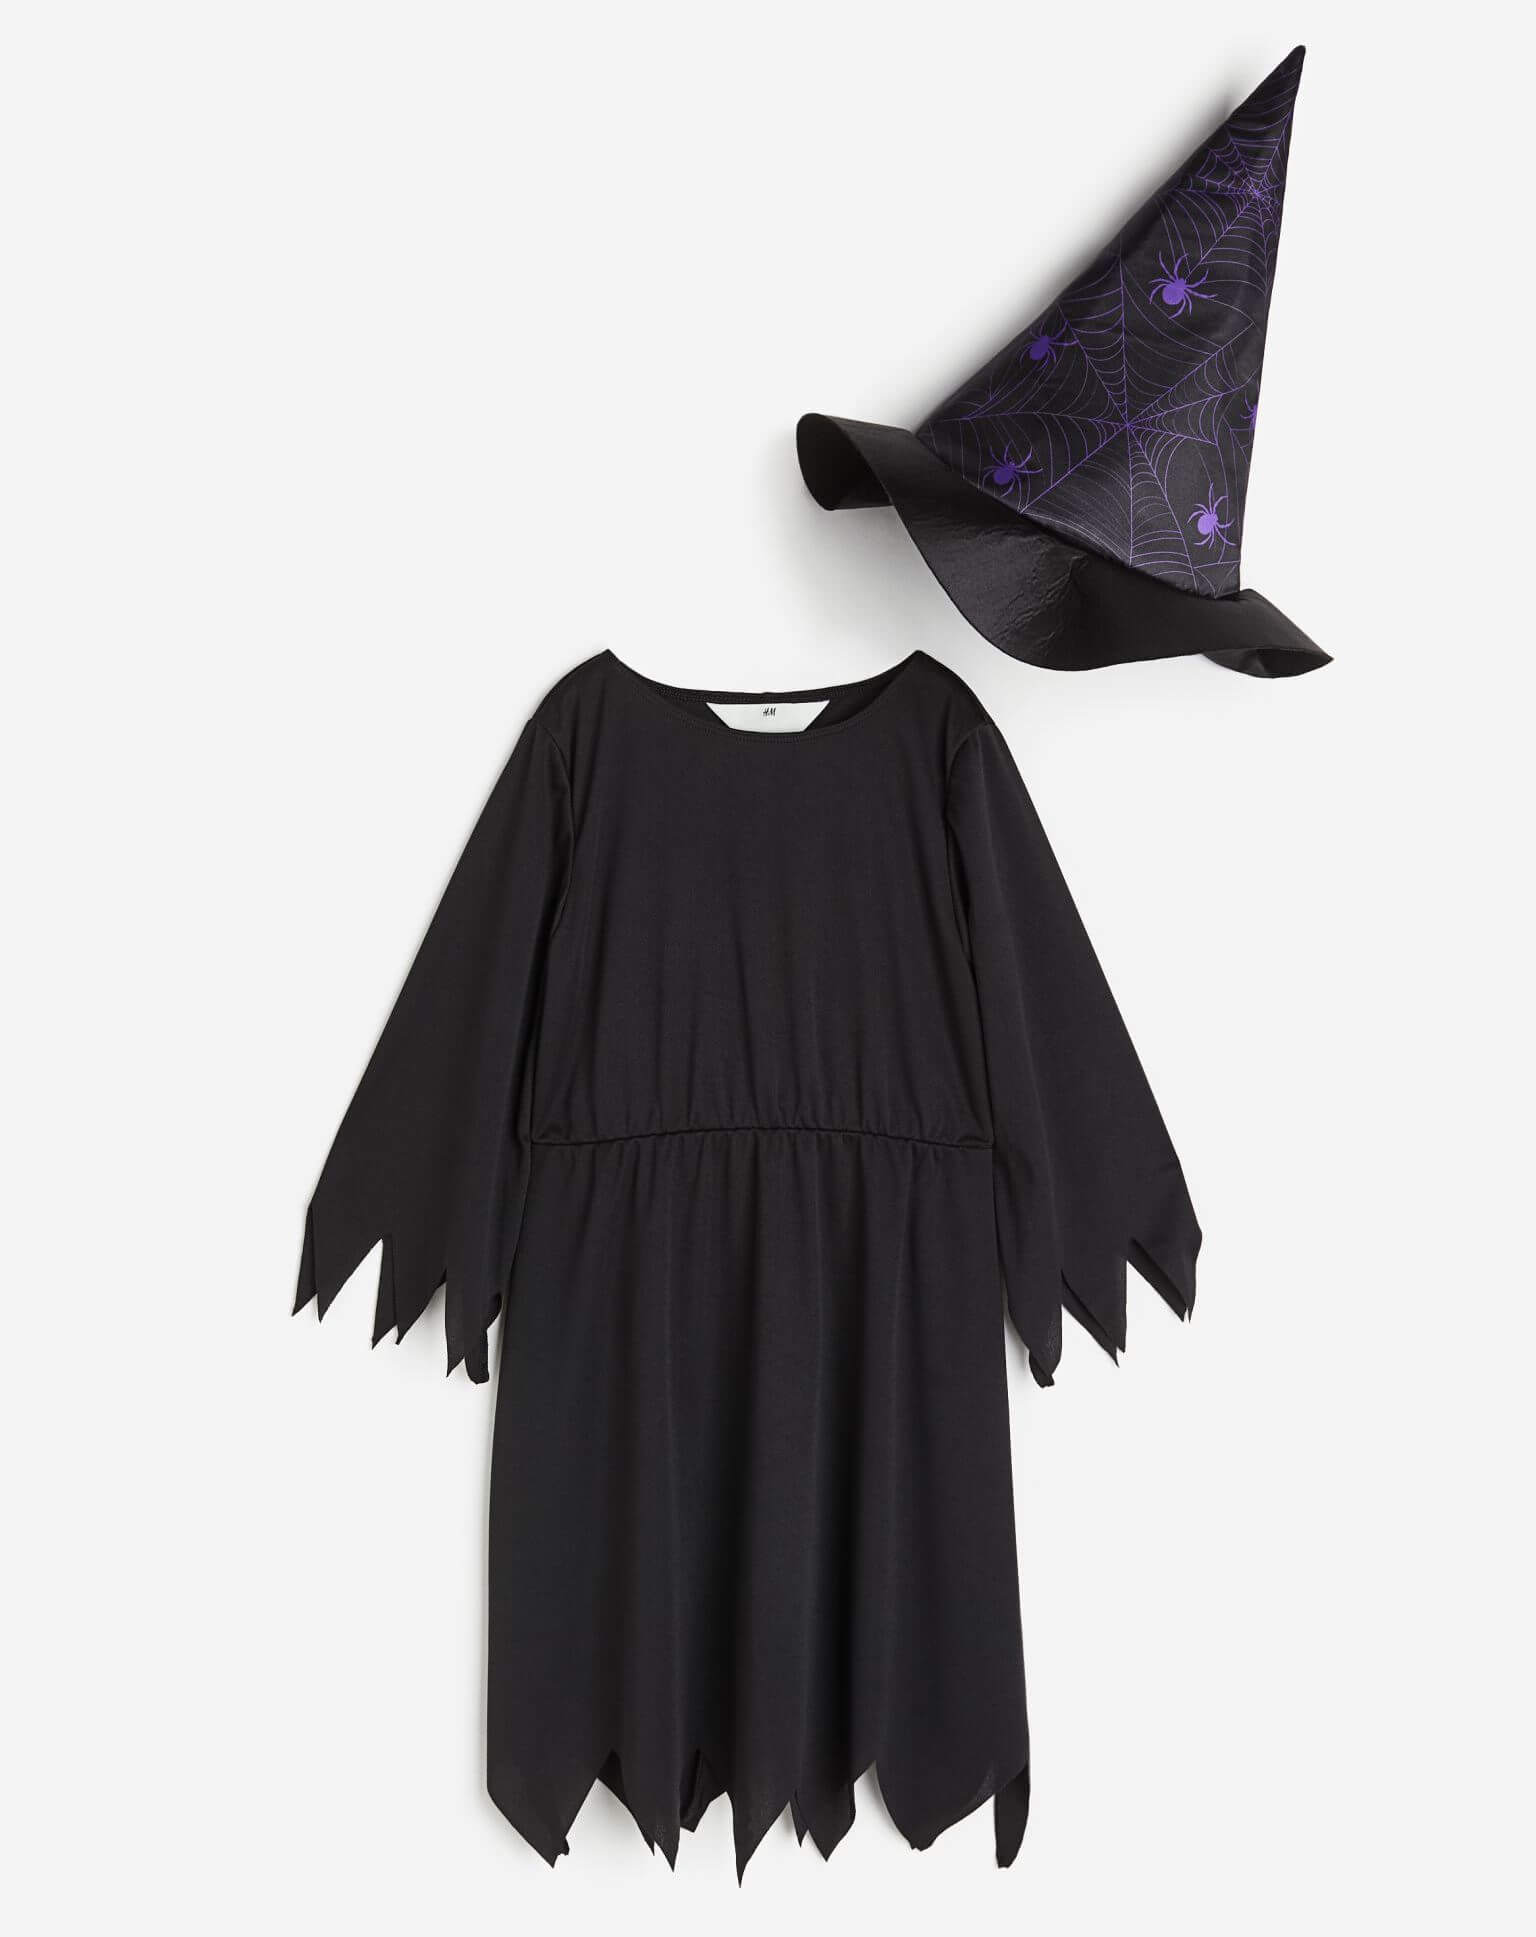 цена Карнавальный костюм H&M Spiders Witch, черный/фиолетовый